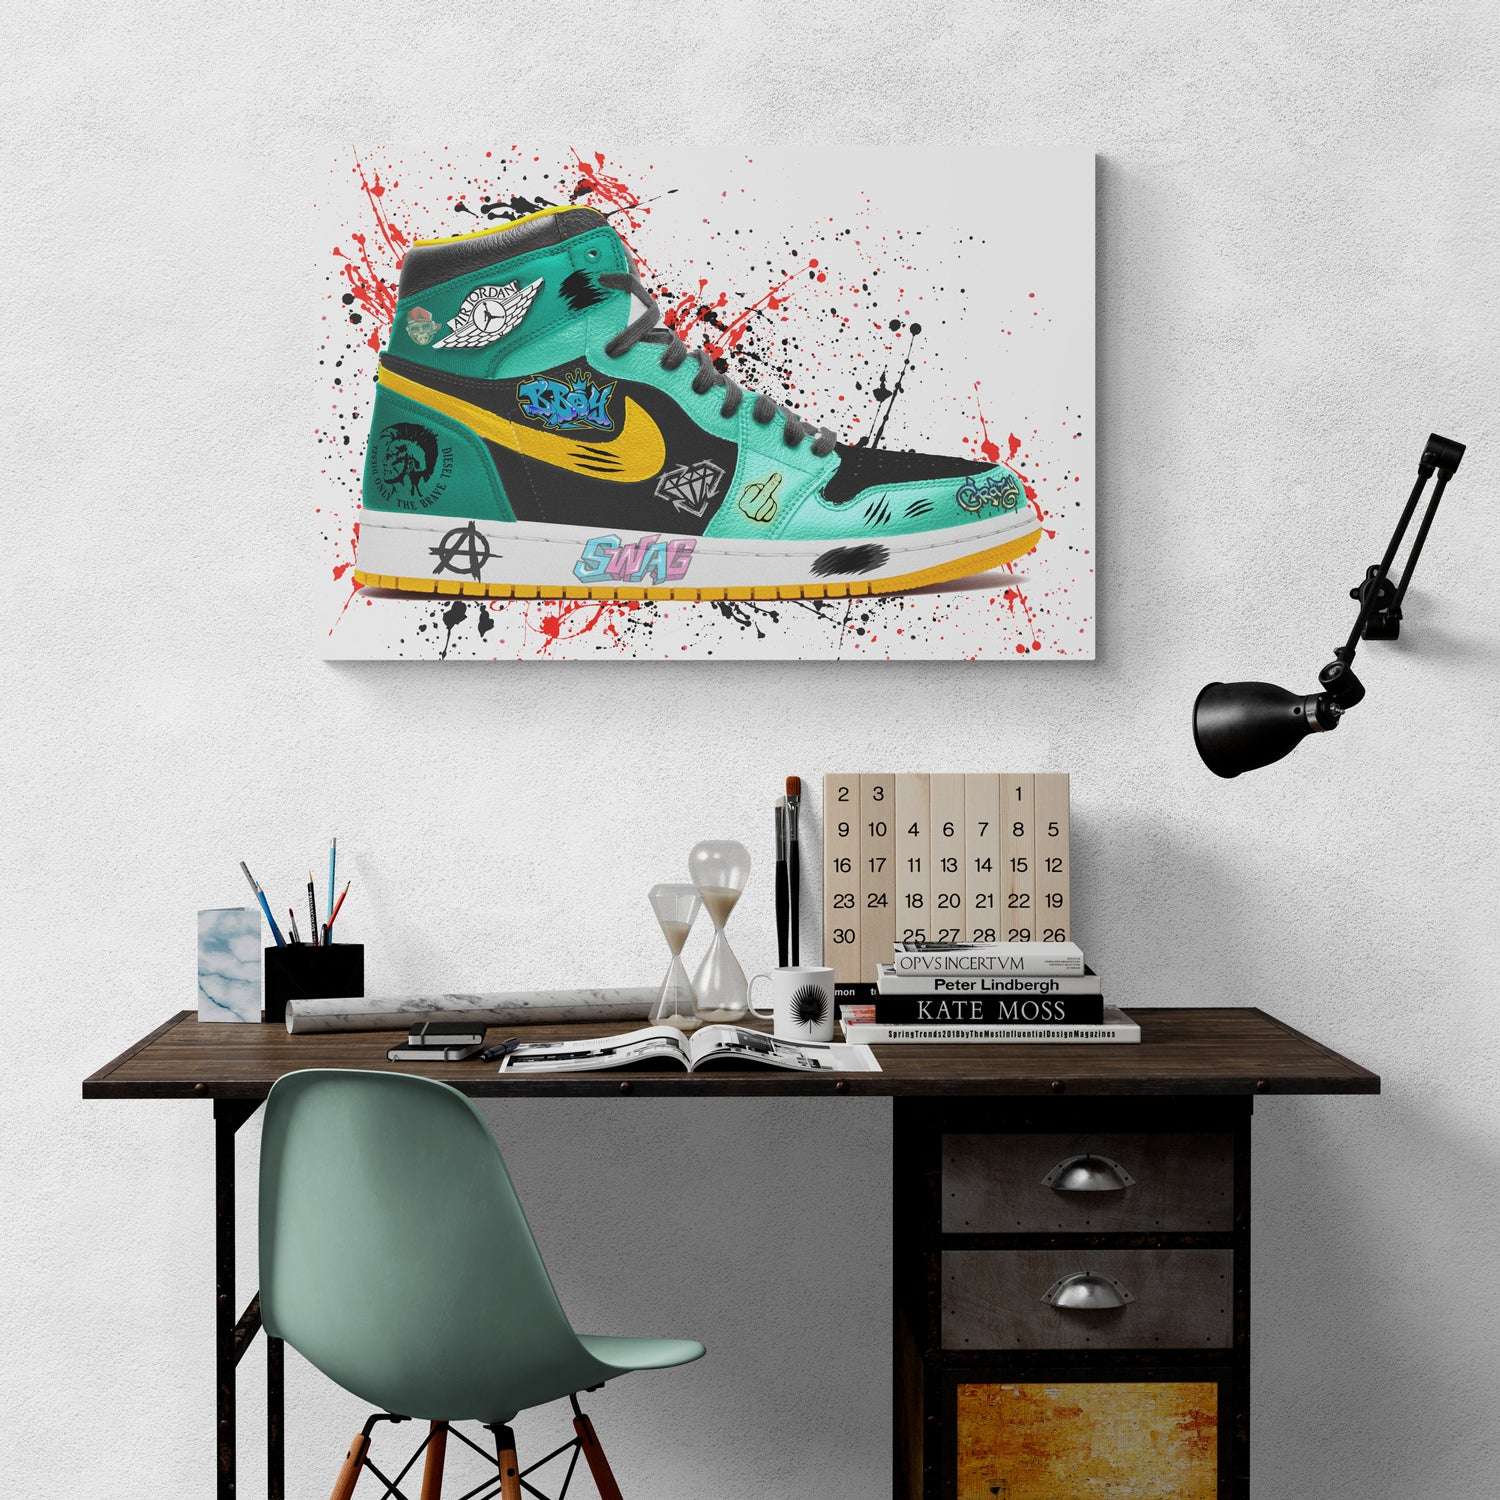 Green Nike Jordan Air Graffiti Sneaker